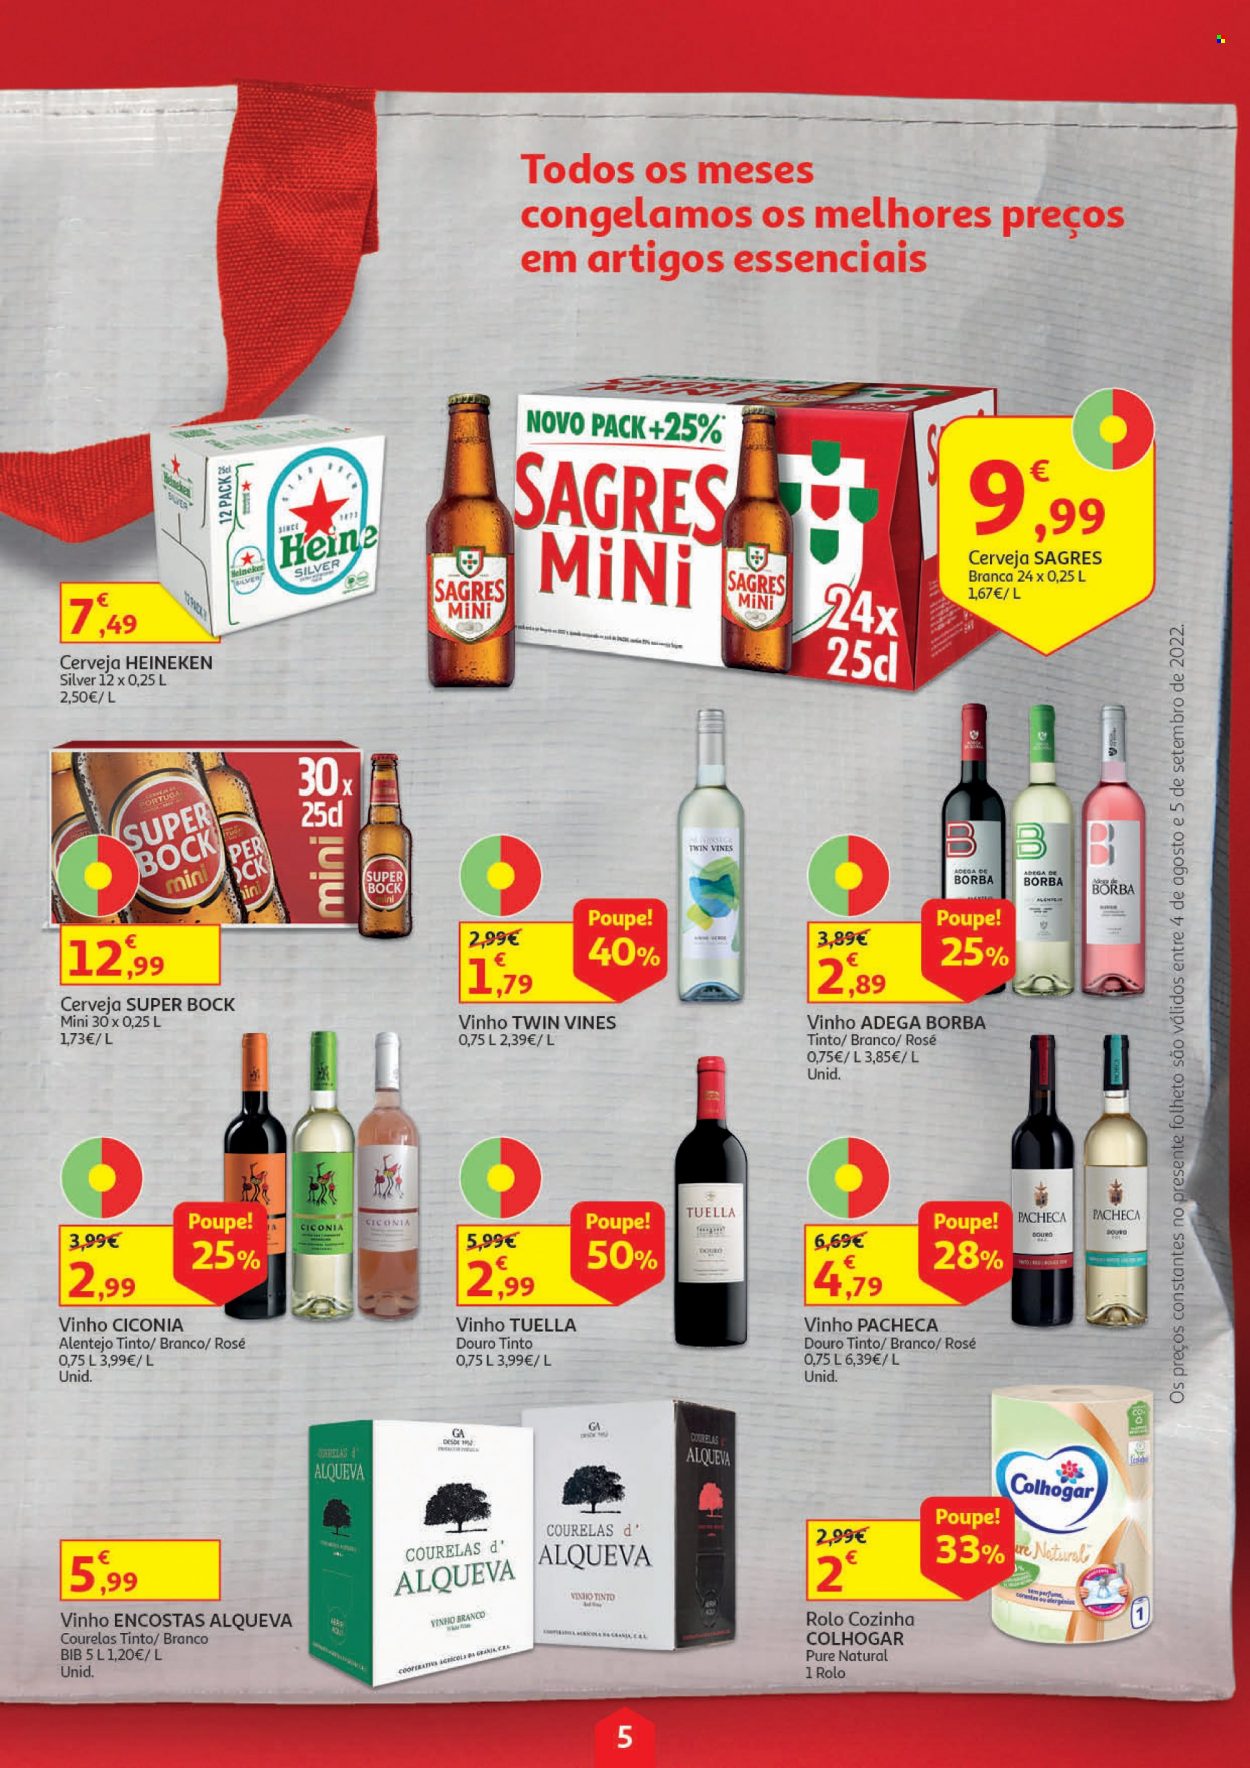 thumbnail - Folheto Auchan - 4.8.2022 - 5.9.2022 - Produtos em promoção - Heineken, Sagres, Super Bock, cerveja, vinho, vinho branco, vinho tinto, rolo de cozinha. Página 5.